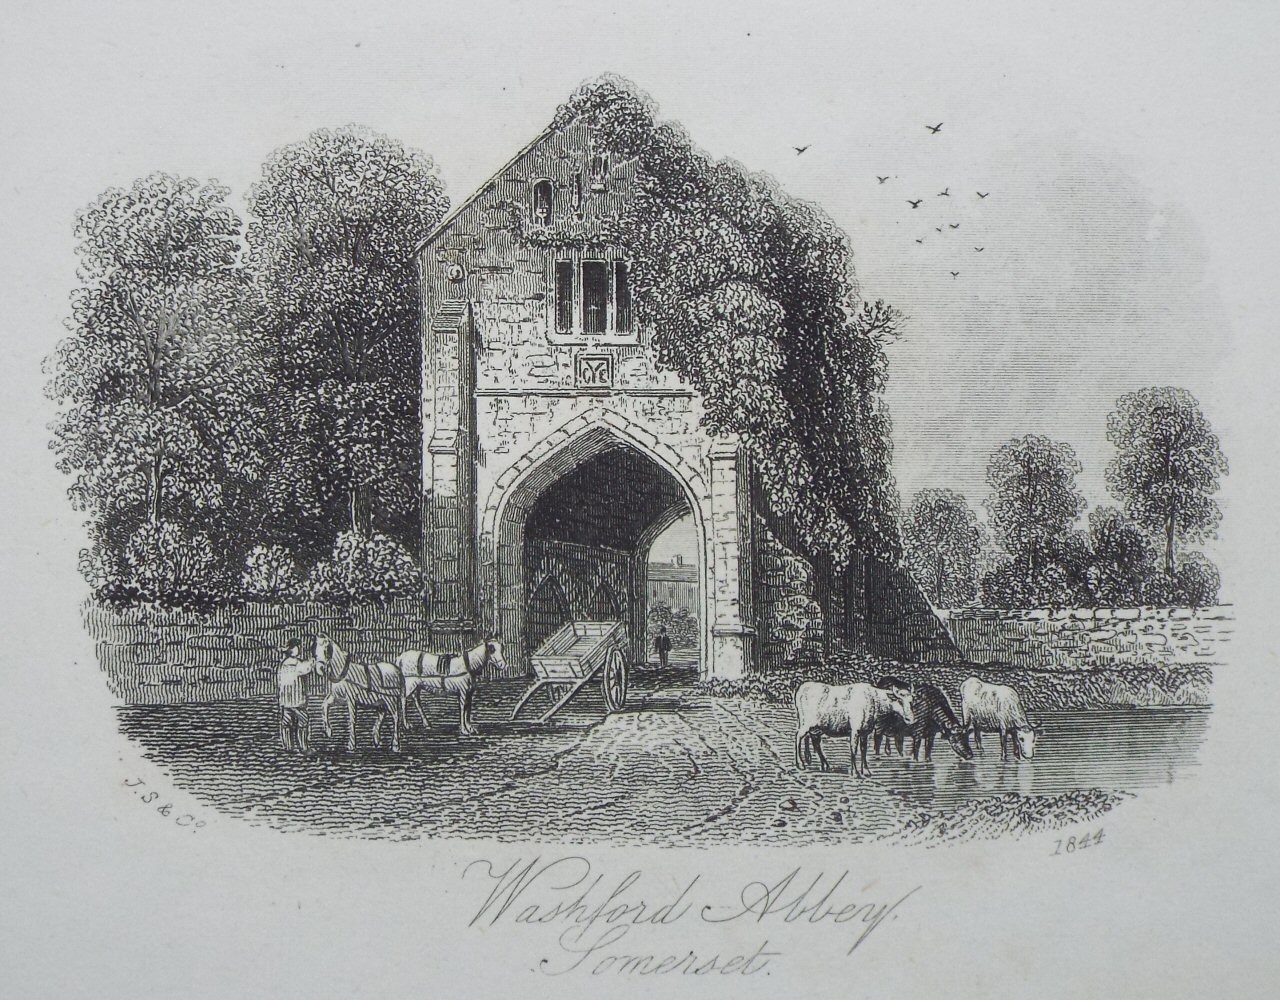 Steel Vignette - Washford Abbey, Somerset - J